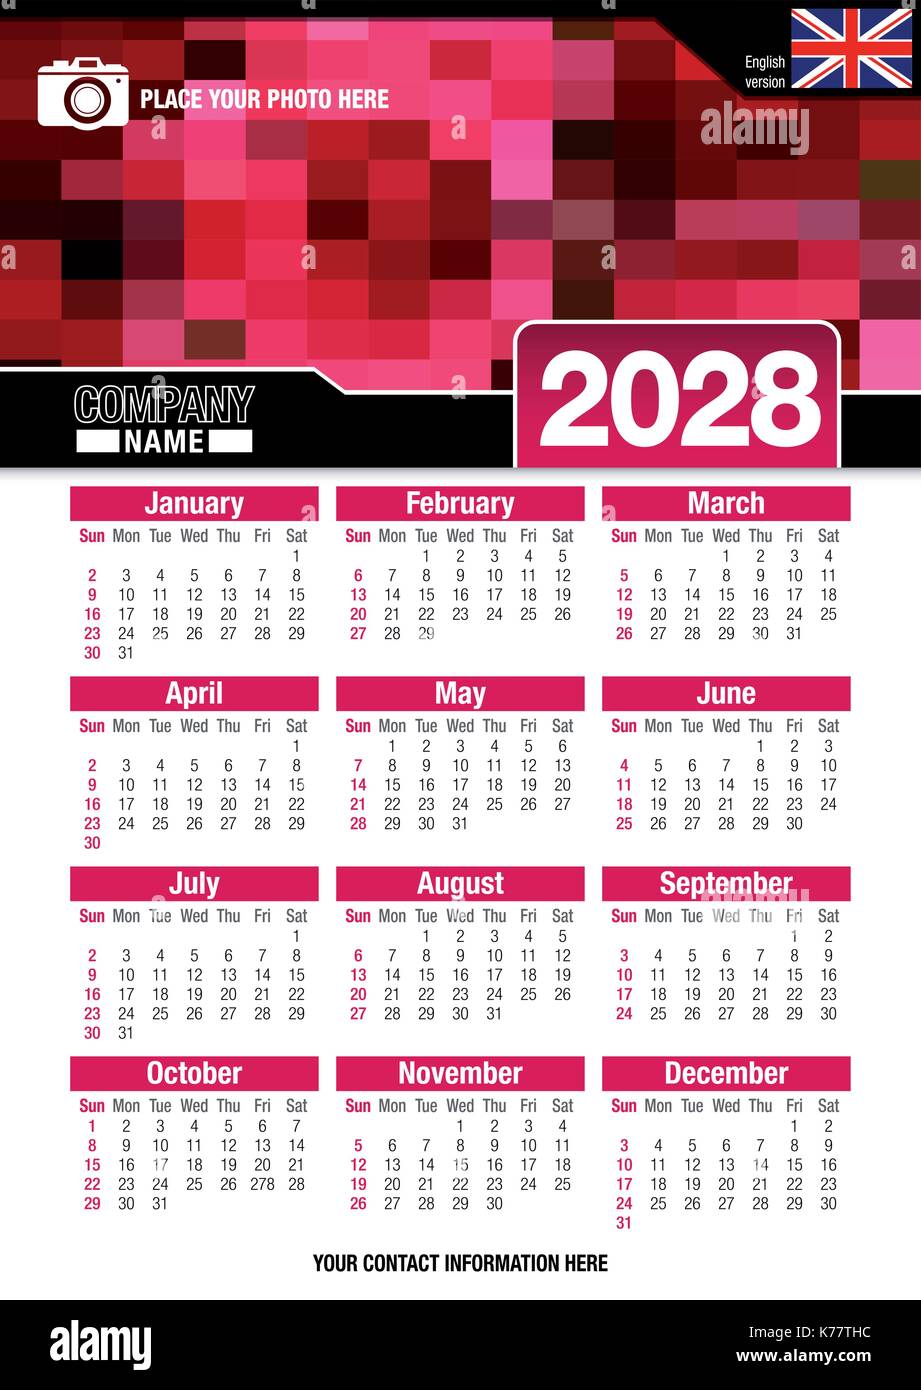 Utile calendario da parete 2028 con design di colori rosso mosaico. Formato A4 verticale. Dimensioni: 210mm x 297mm. Versione Inglese - immagine vettoriale Illustrazione Vettoriale